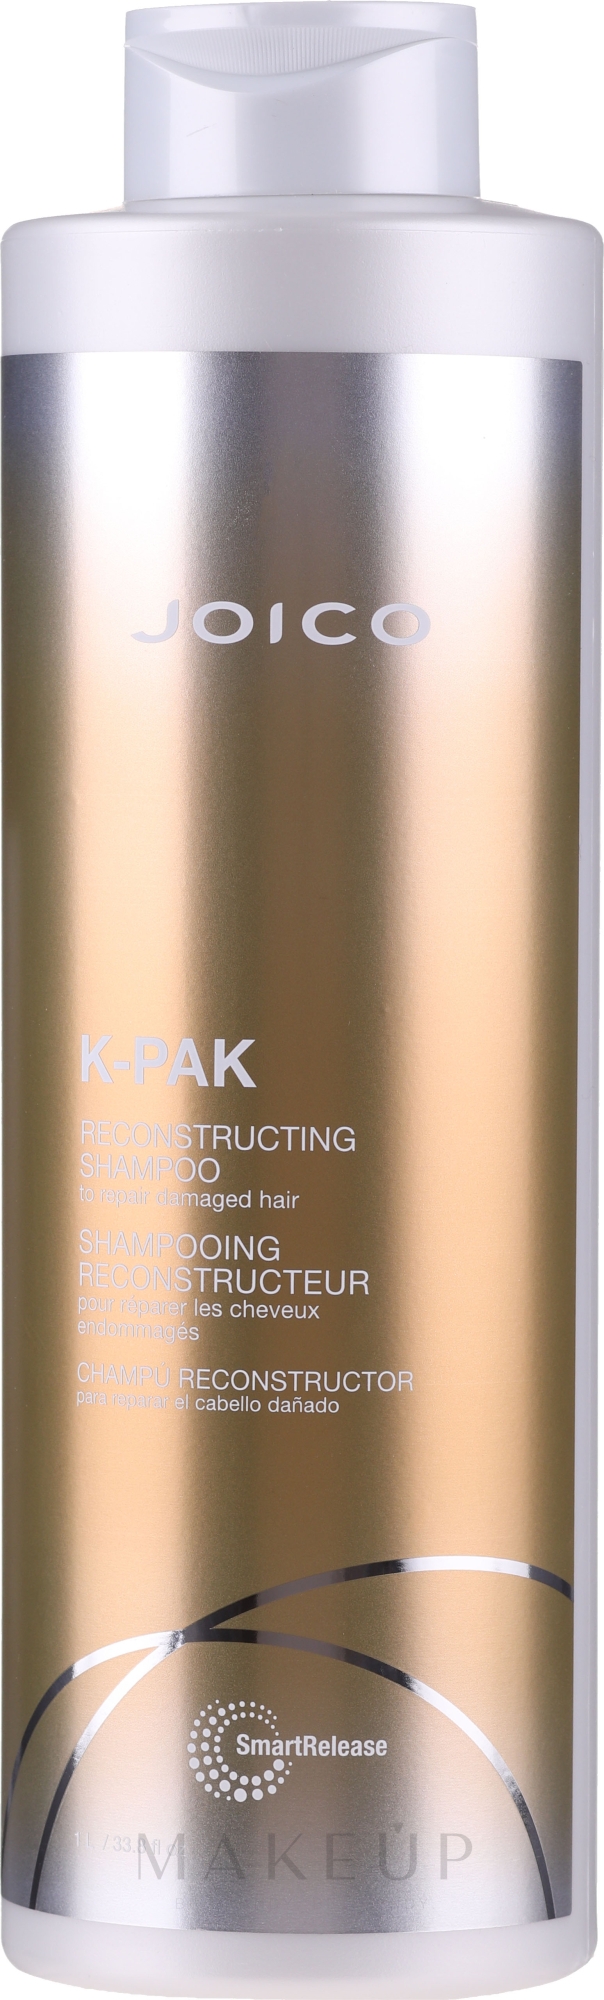 Aktiv regenerierendes Shampoo für strapaziertes Haar mit Peptidkomplex - Joico K-Pak Reconstruct Shampoo — Bild 1000 ml